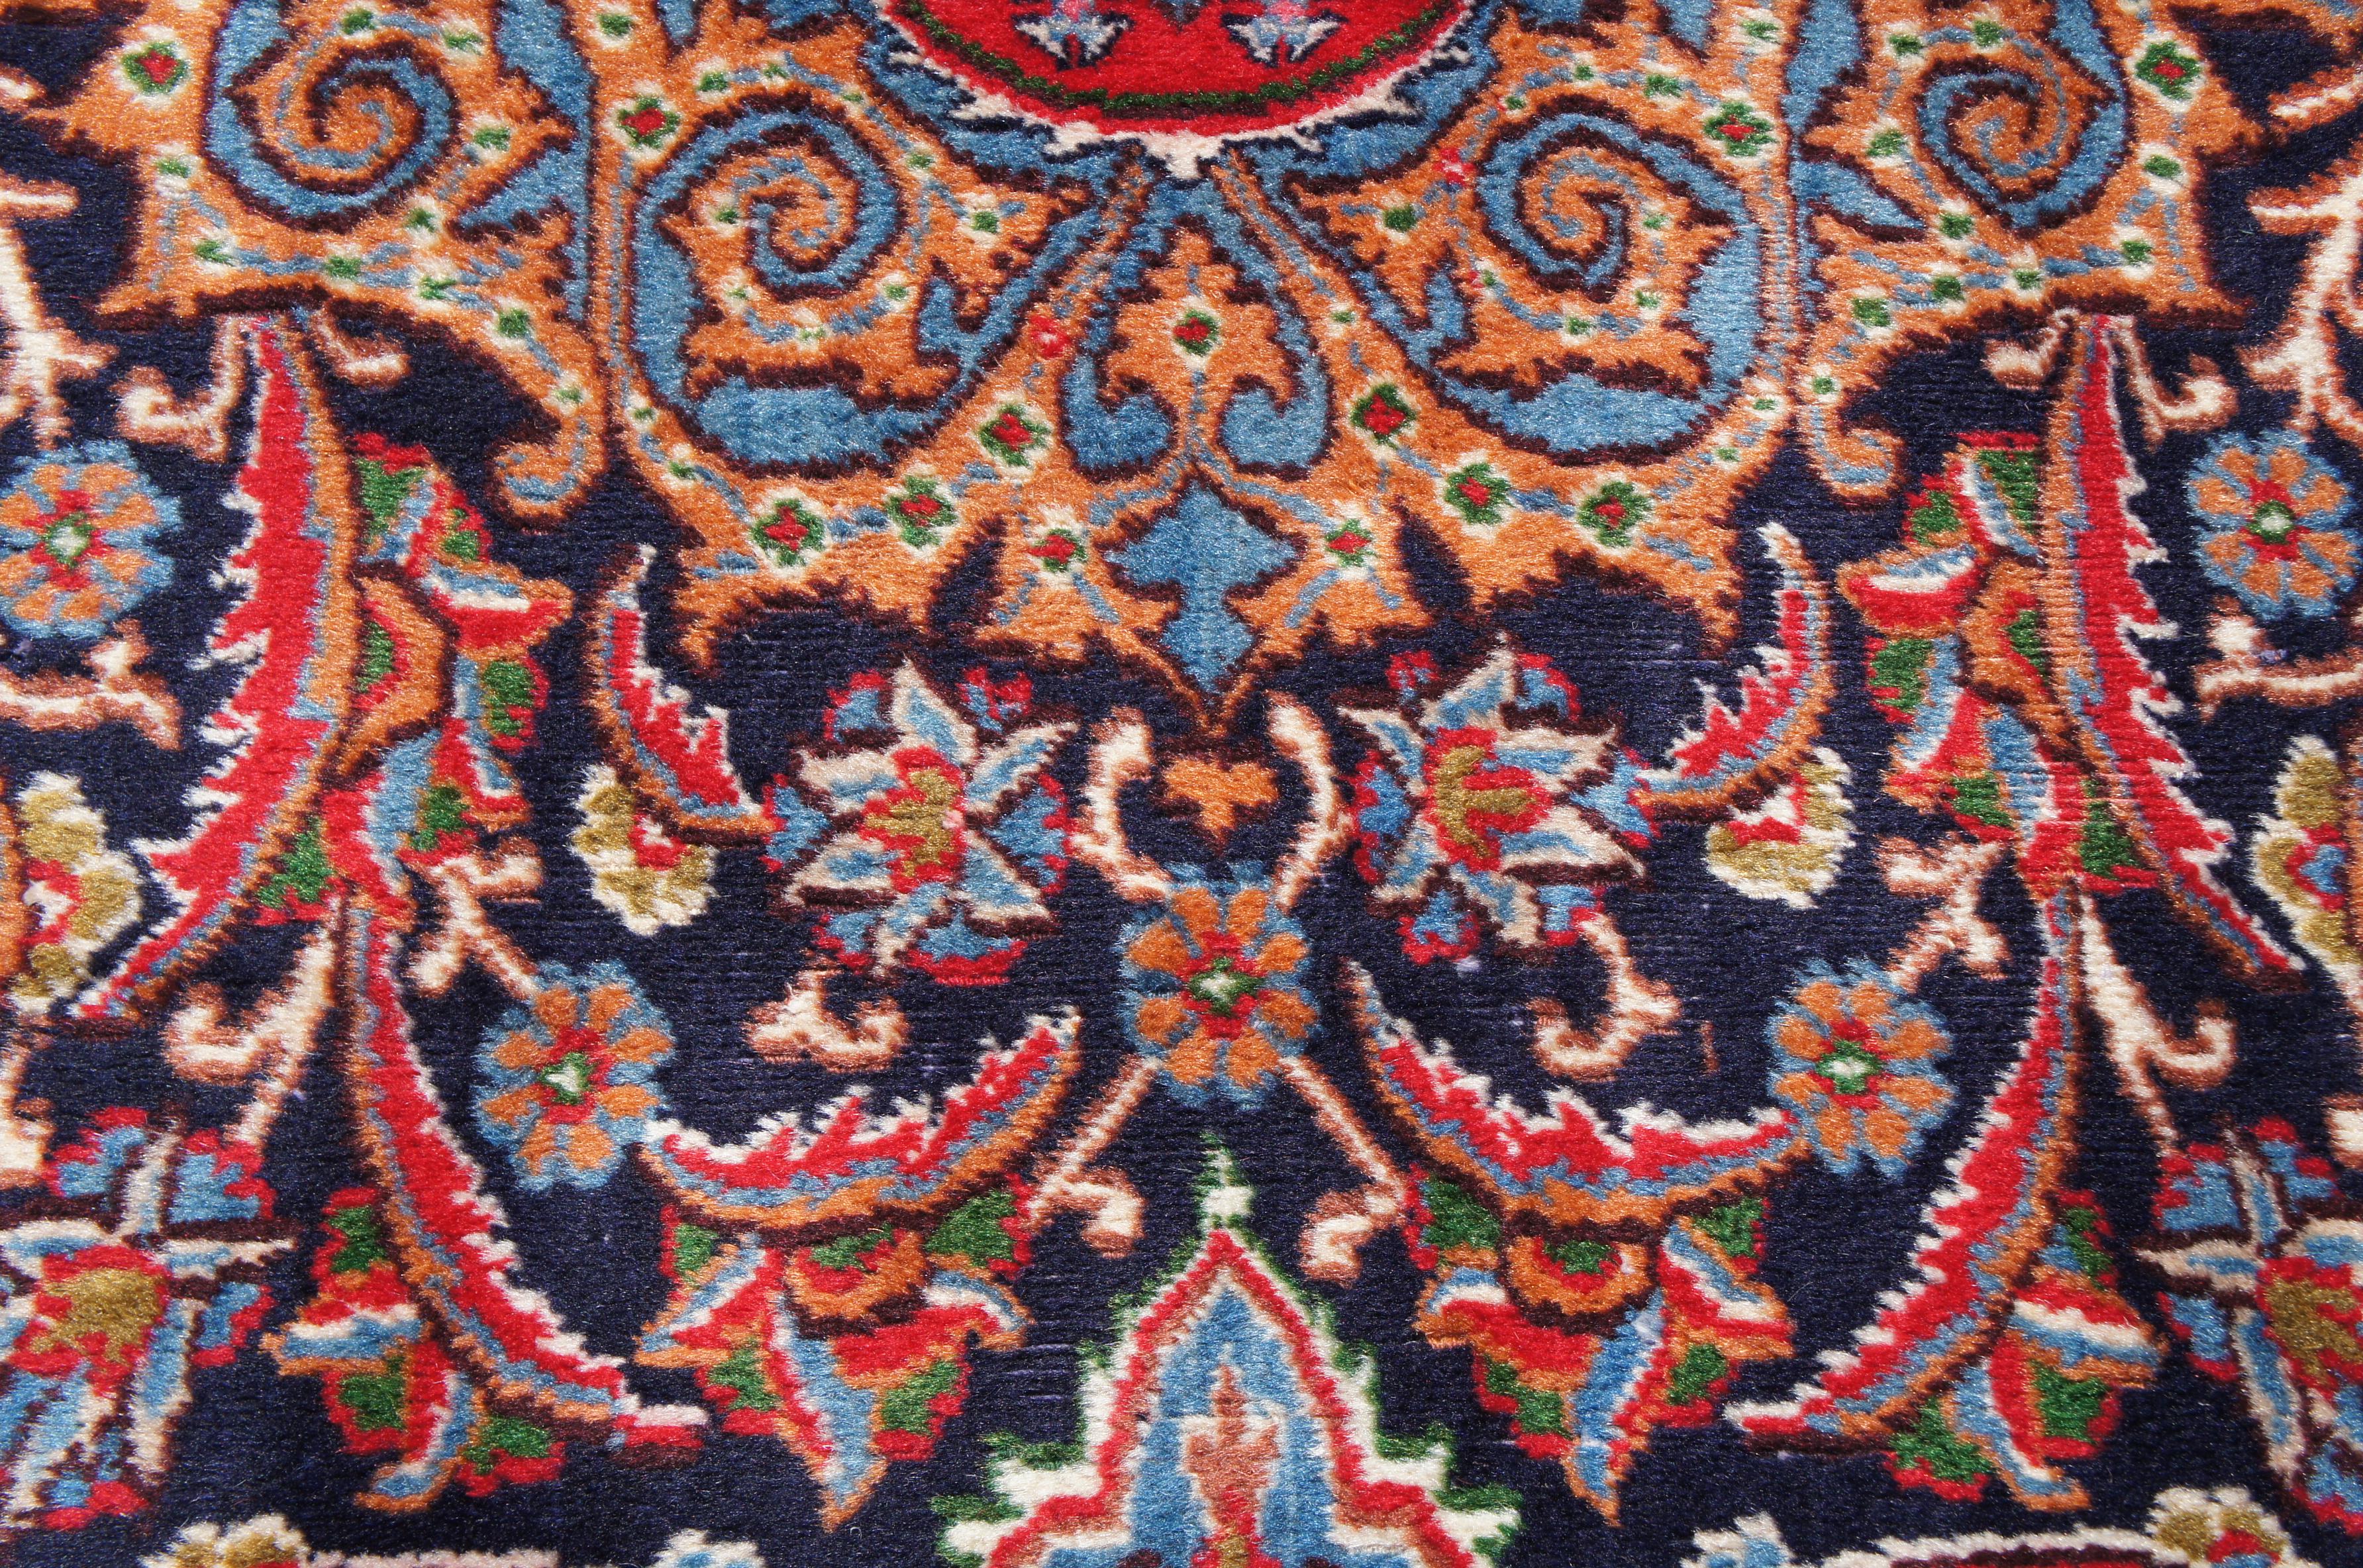 Antique Persian Wool Area Rug Ornamental Medallion Floral Bird Trophy Urn Vase For Sale 3